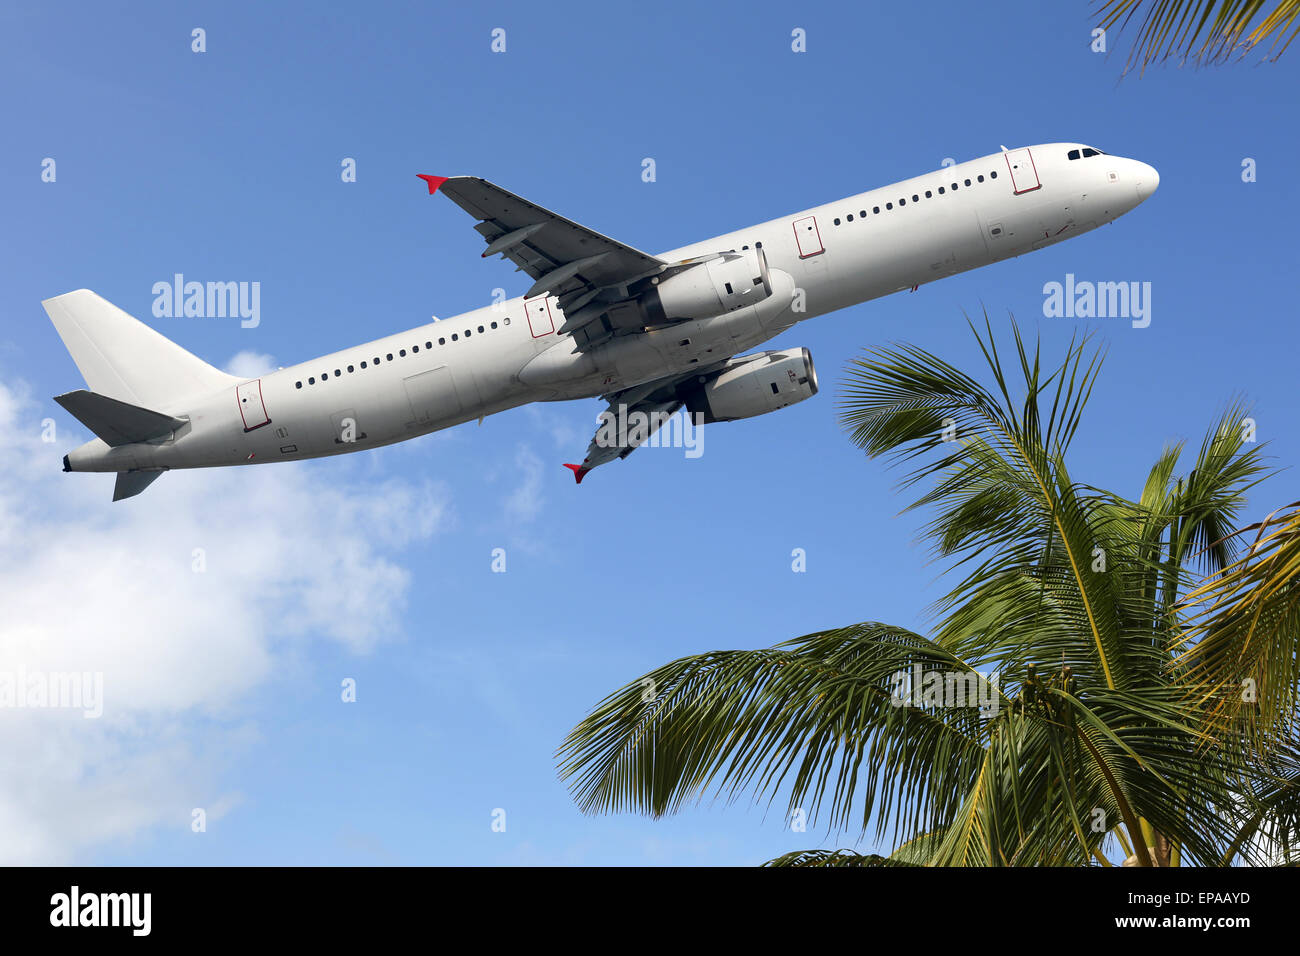 Flugzeug startet zwischen Palmen in den Urlaub Banque D'Images